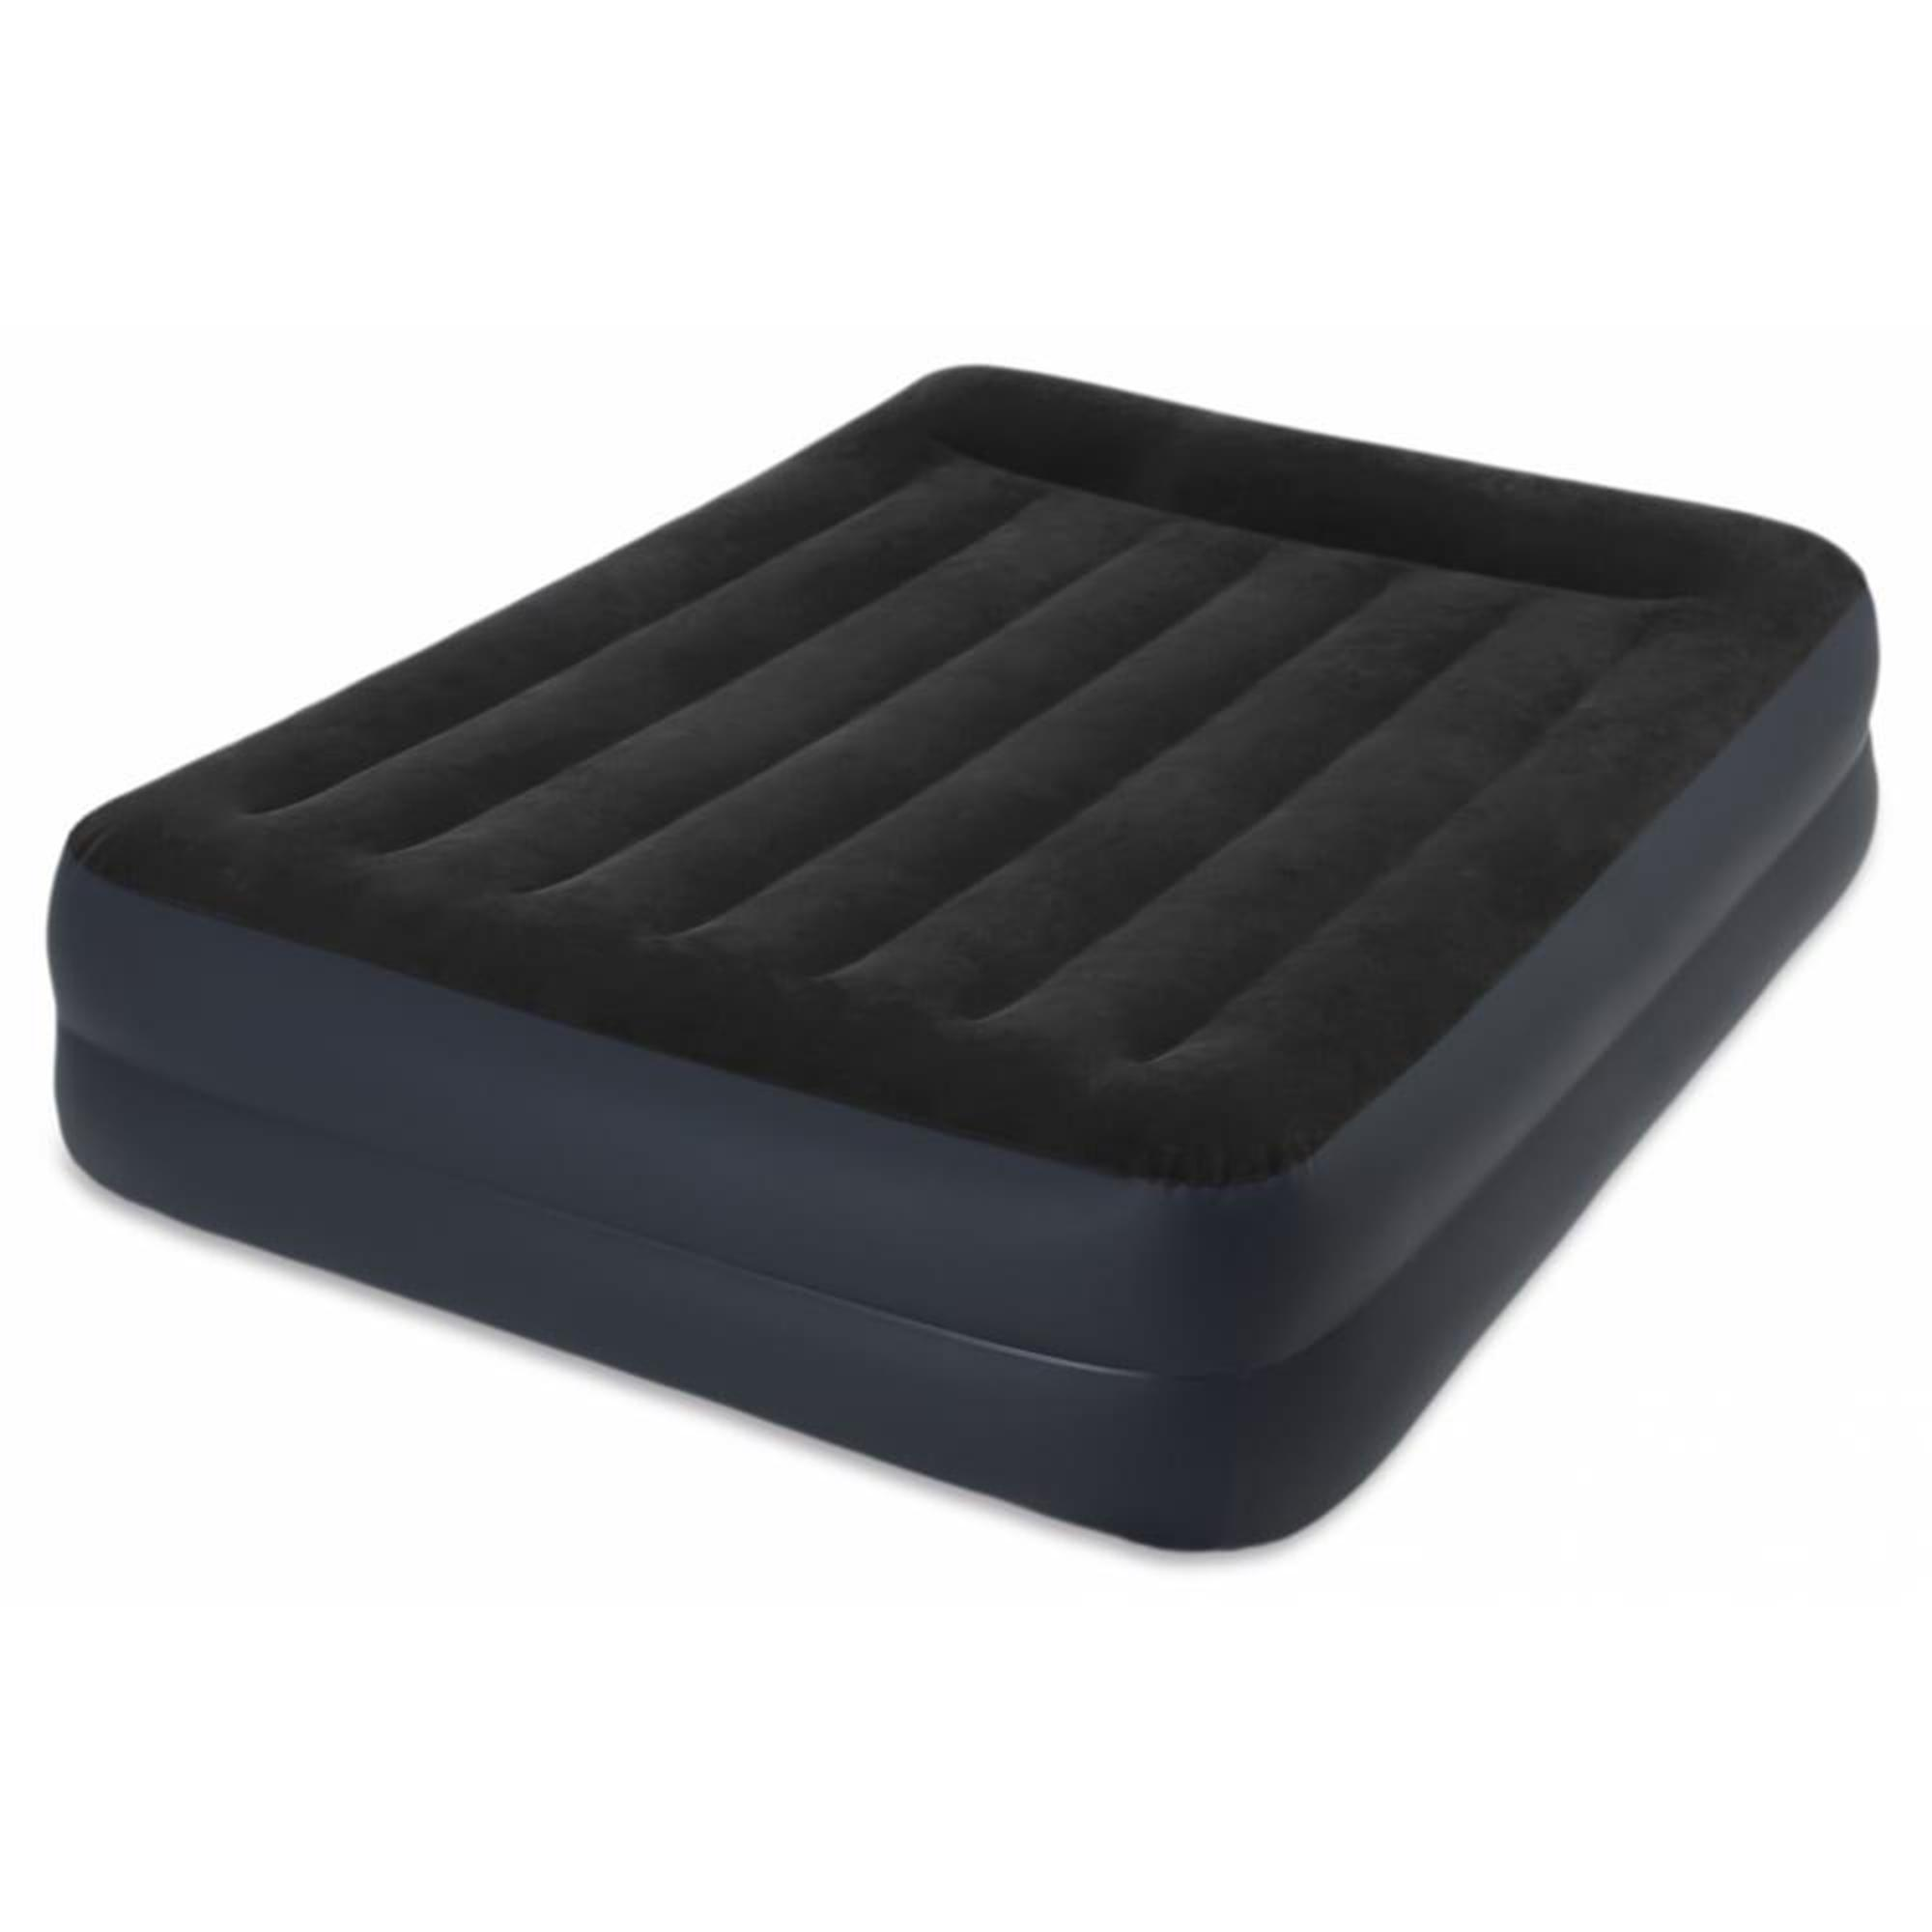 Надувная кровать Intex Pillow Rest Raised Bed (64124), 203х152 см, темно-синий